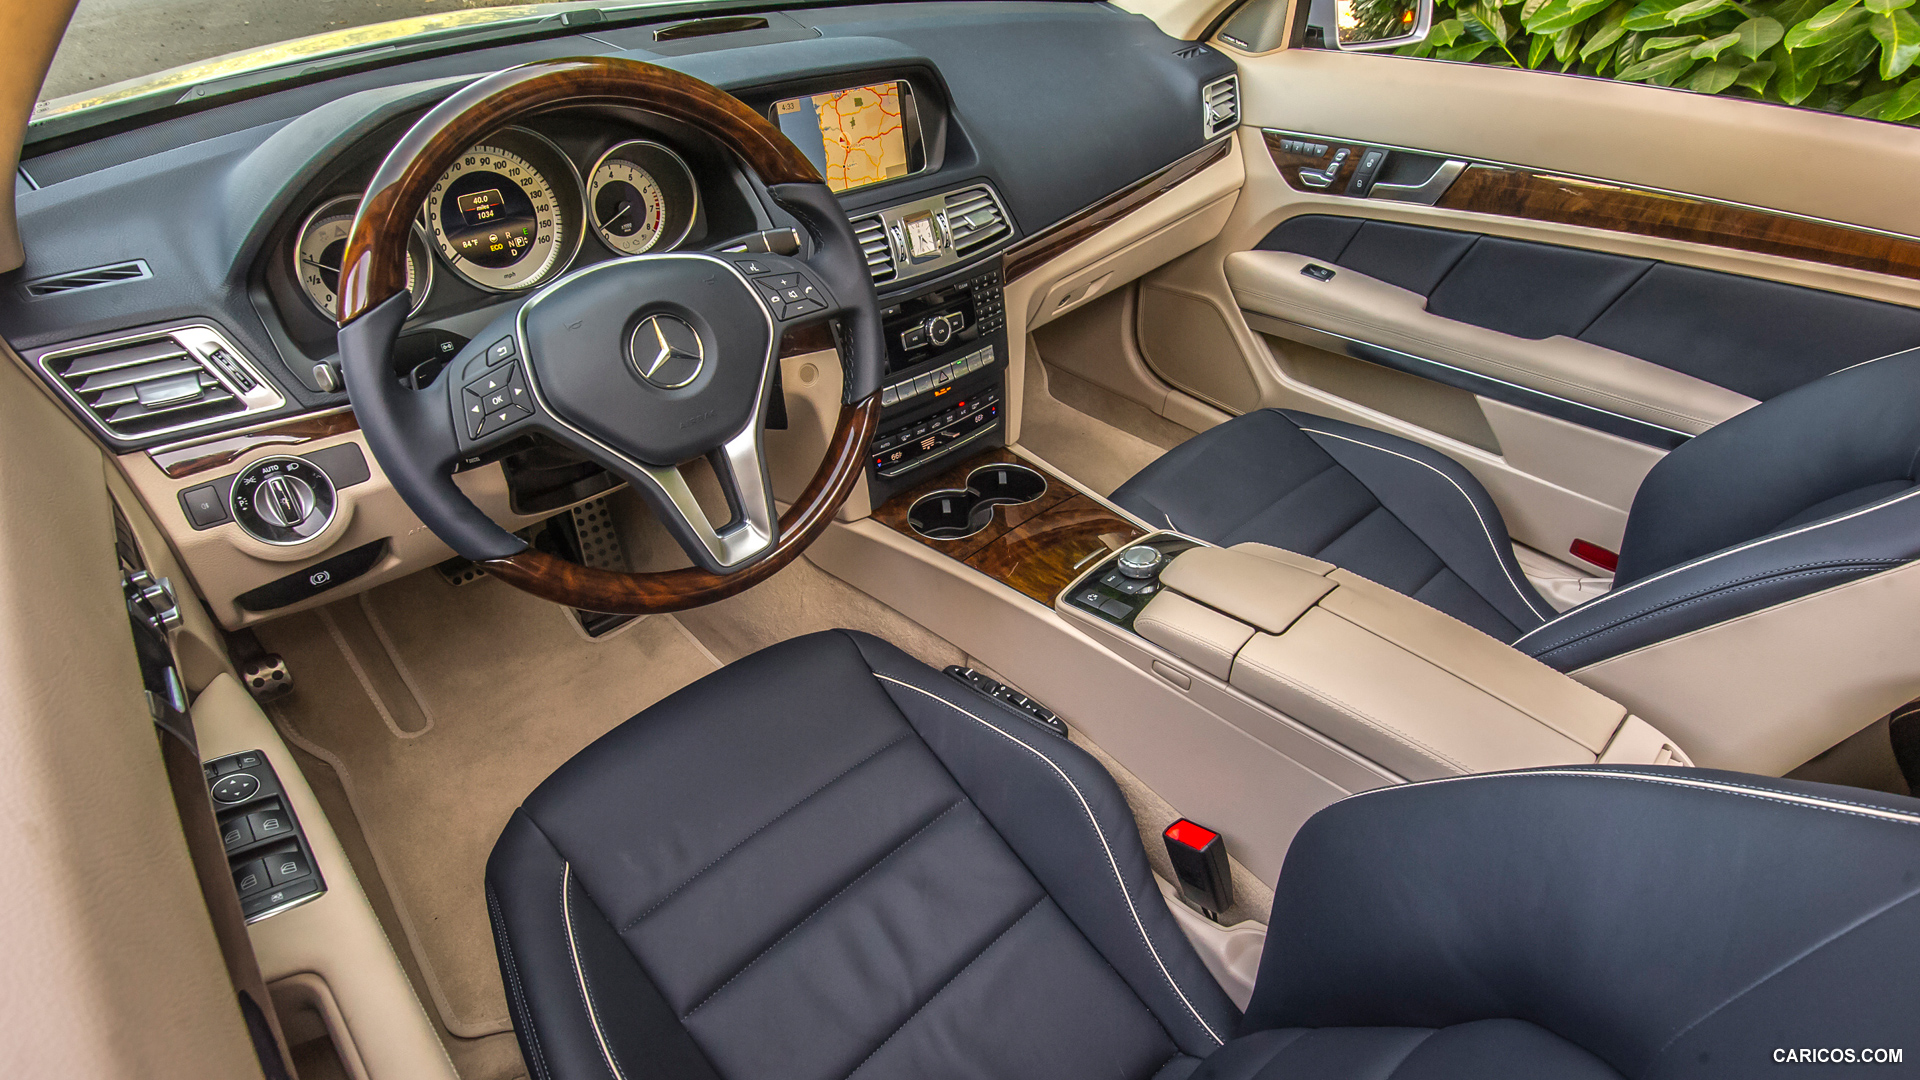 14 Mercedes Benz E Class 50 4matic Coupe Interior Caricos